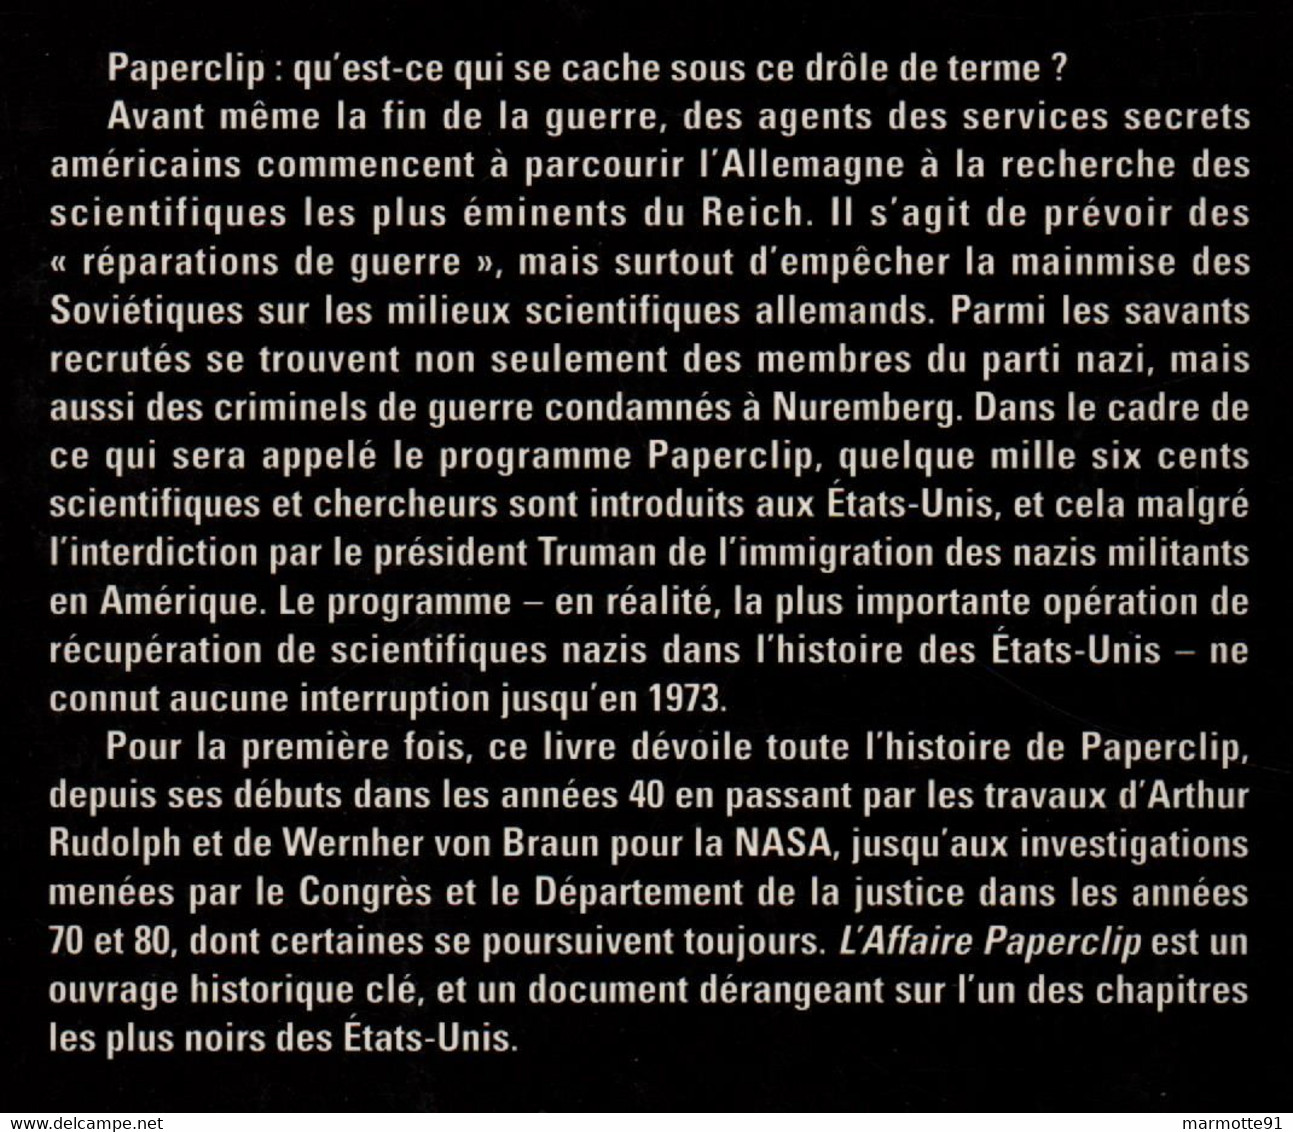 L AFFAIRE PAPERCLIP RECUPERATION DES SCIENTIFIQUES NAZIS PAR LES AMERICAINS 1945 1990 FUSEE NASA ESPACE VON BRAUN - Français